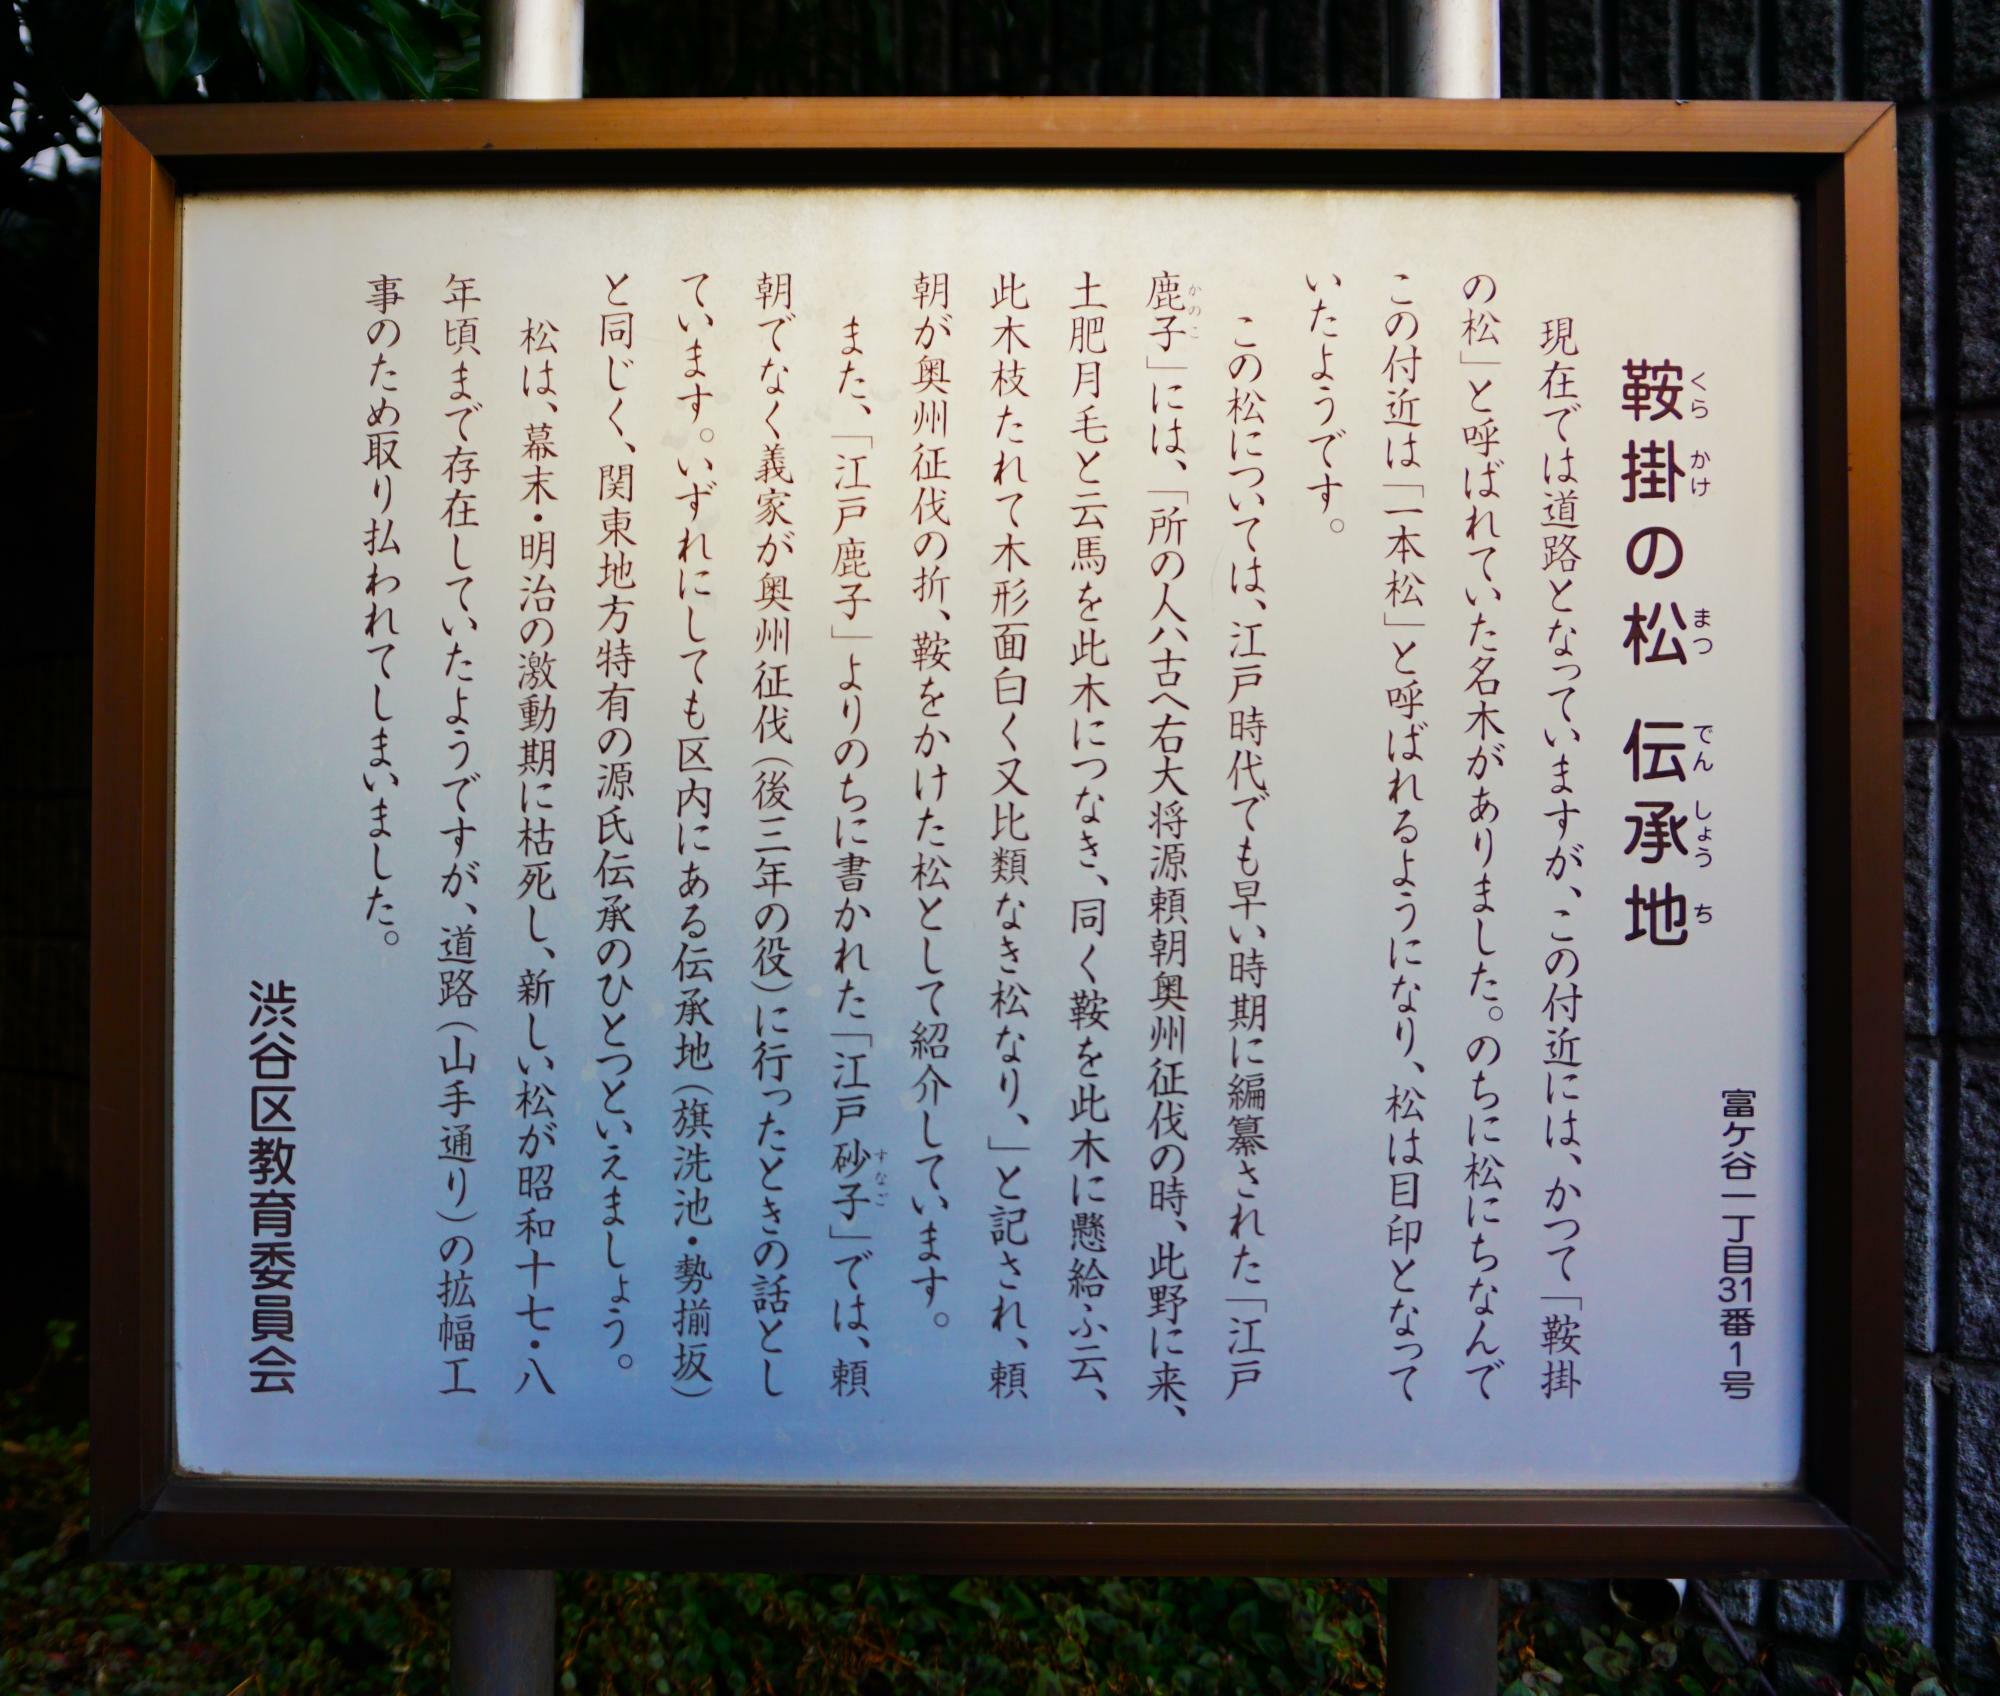 かつてここに源頼朝が奥州征伐の際に鞍をかけた松の名木があったようですね。諸説ありますが、“鎌倉殿”が奥渋谷をトコトコ歩いていたのかもしれないと思うと、ご近所民としては感慨深い限りです